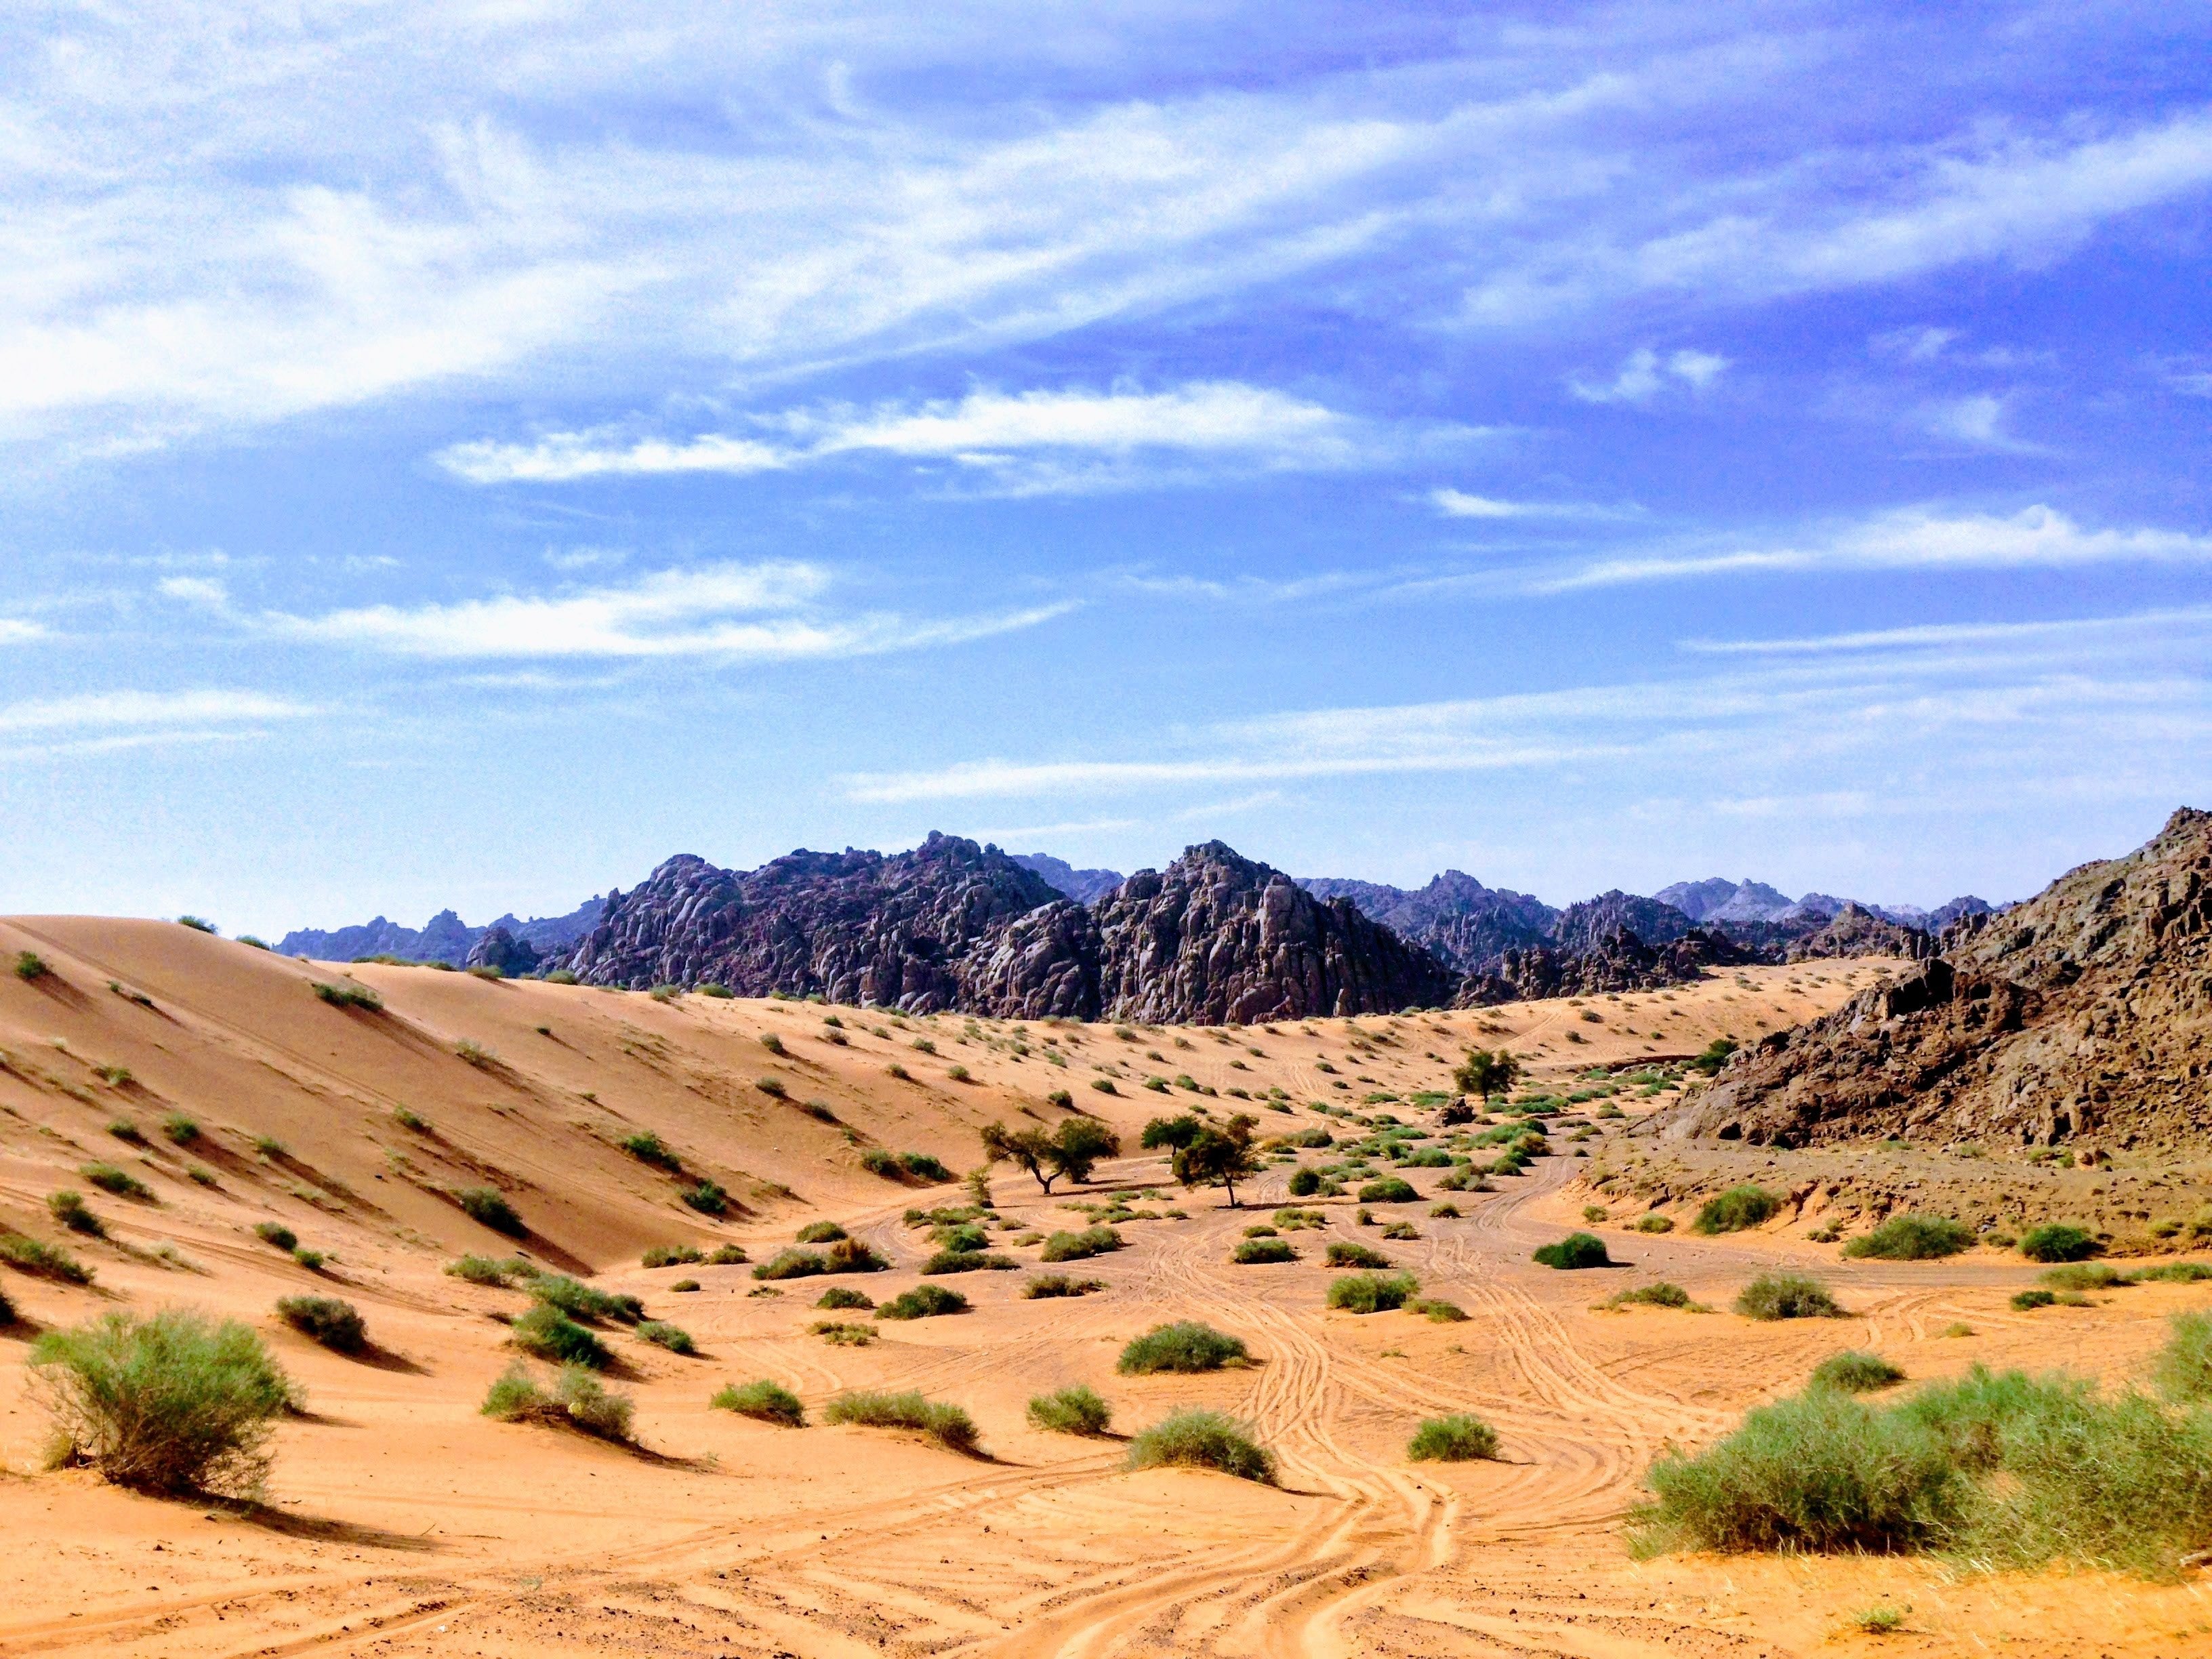 Реки саудовской аравии. Пустыня малый Нефуд. Саудовская Аравия пустыня Нефуд. Саудовская Аравия пустыня руб-Эль-Хали. Пустыня Аравийского полуострова.